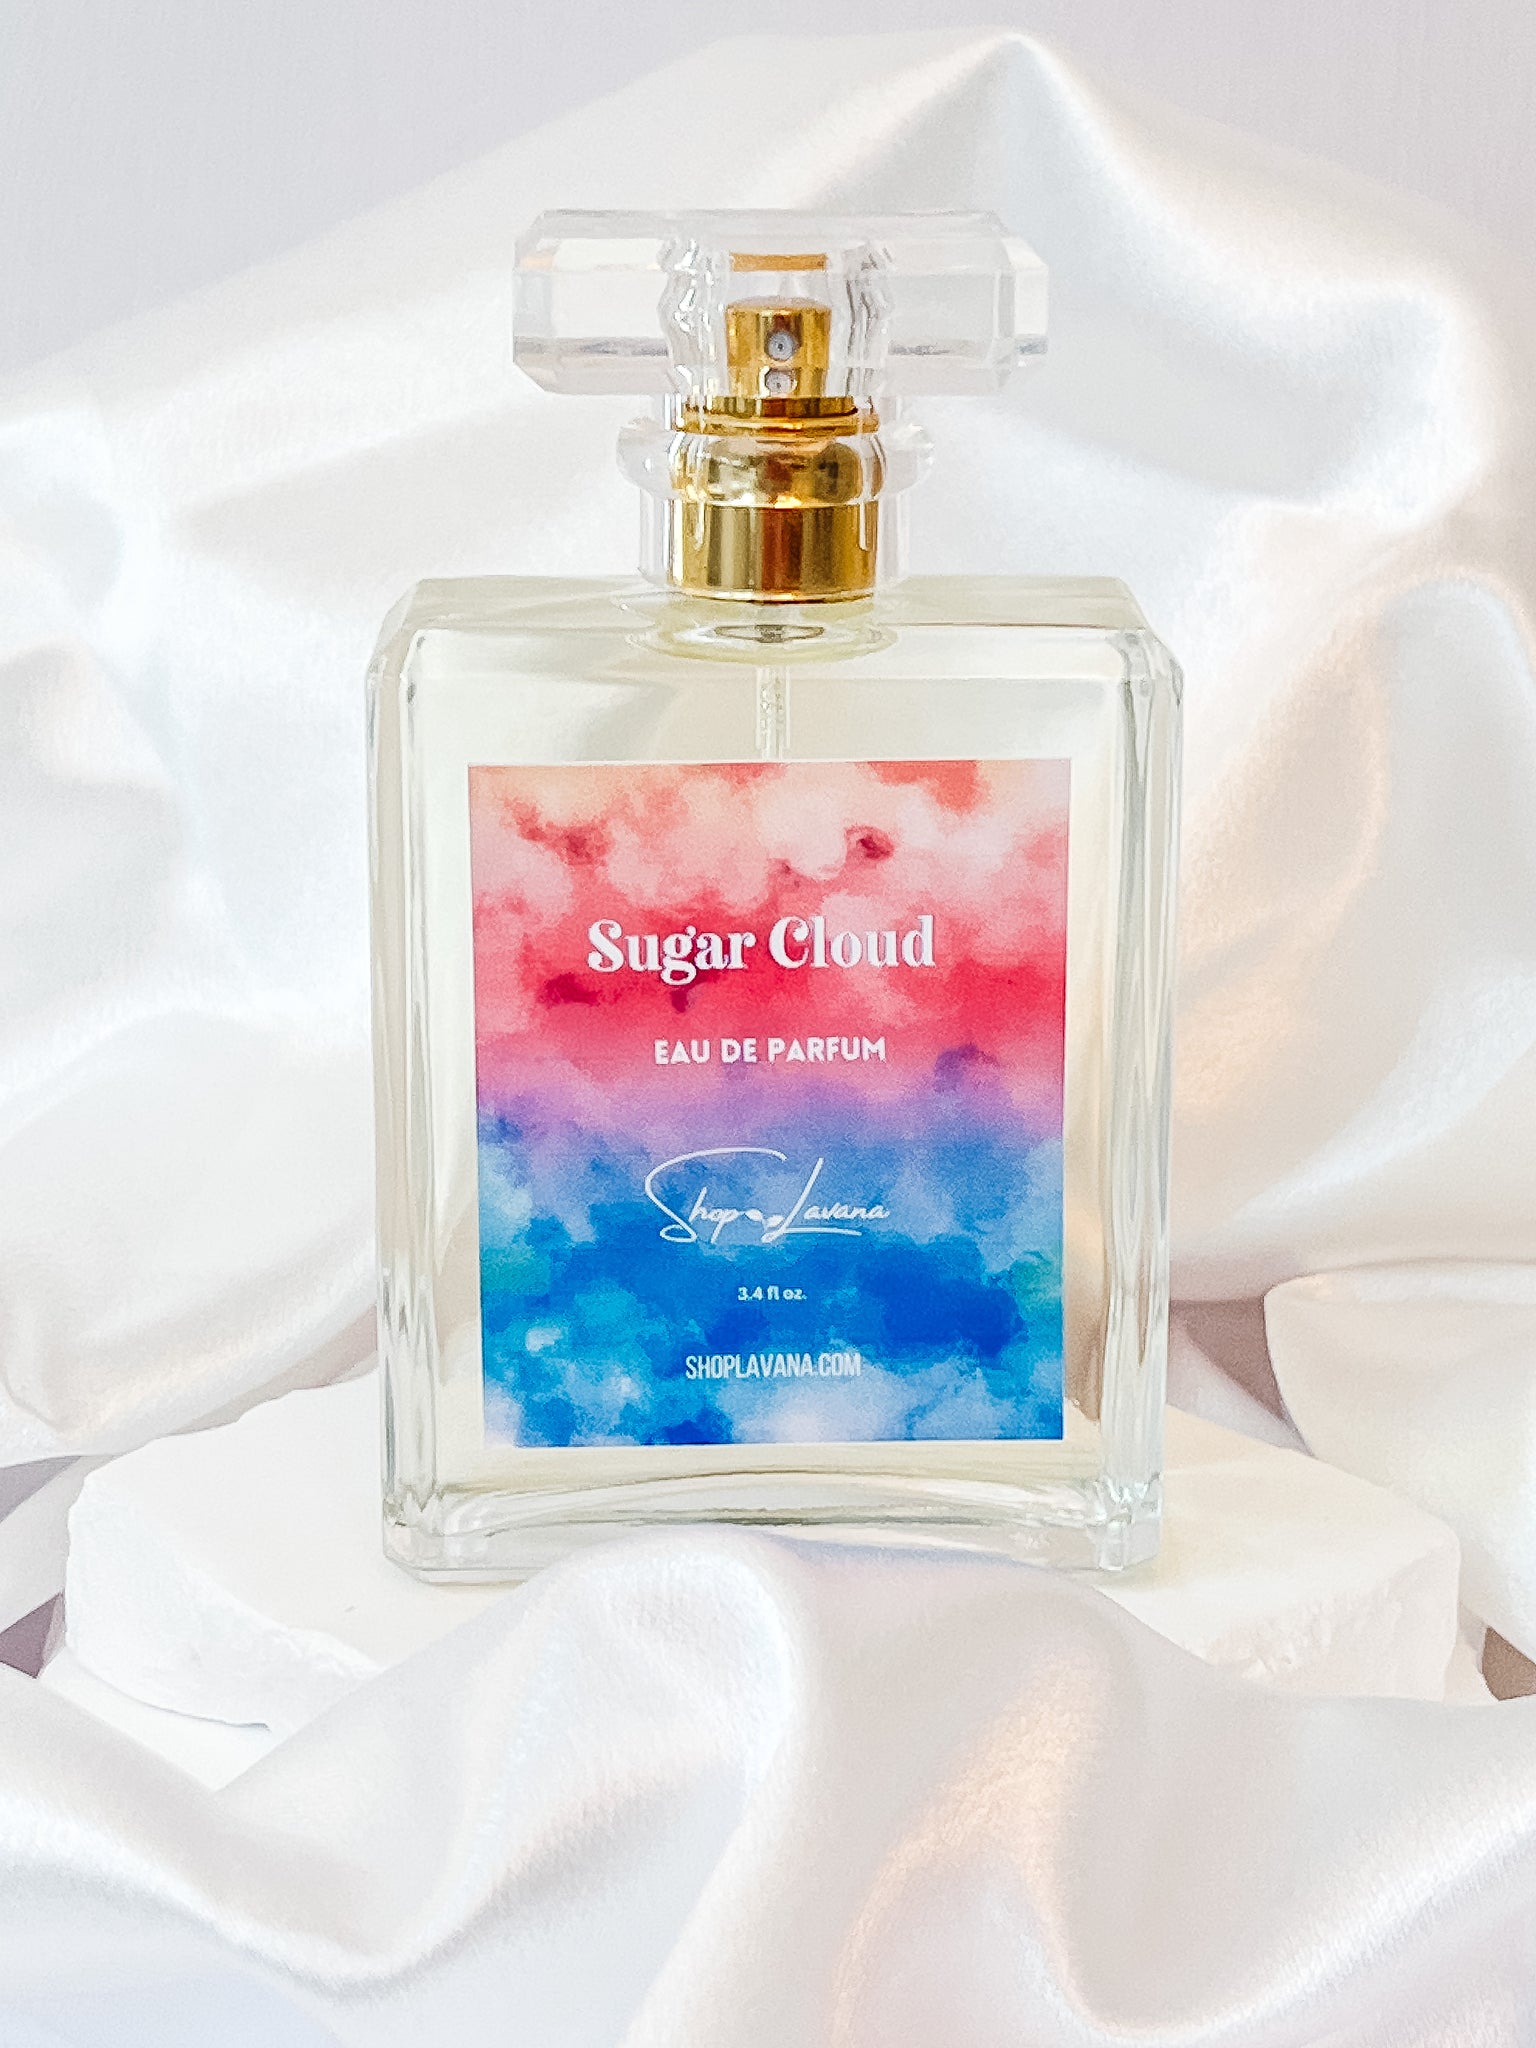 Sugar Cloud Eau de Parfum – Shop Lavana